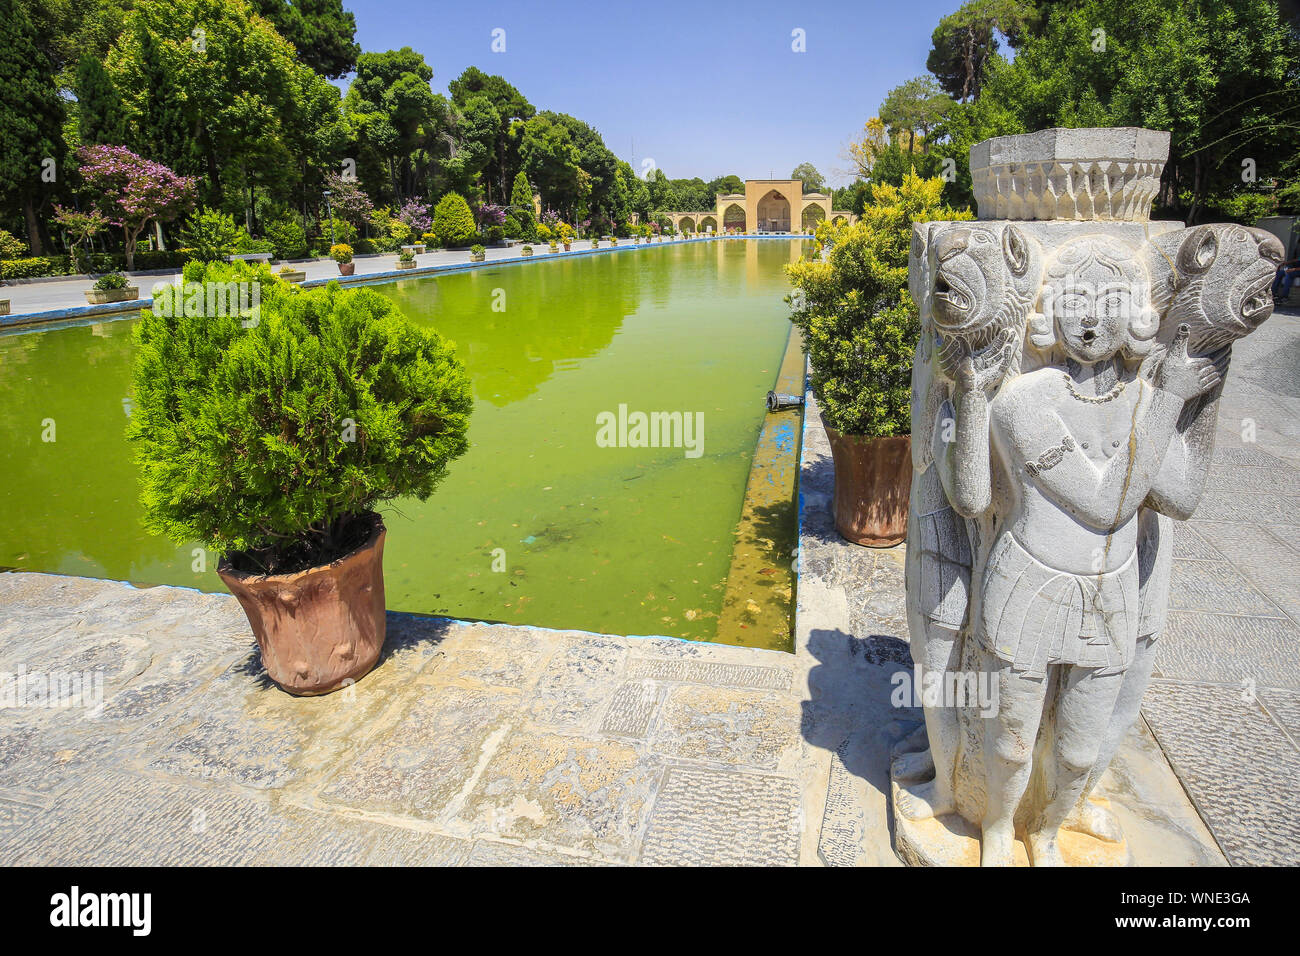 Piscina in un giardino persiano. Foto Stock